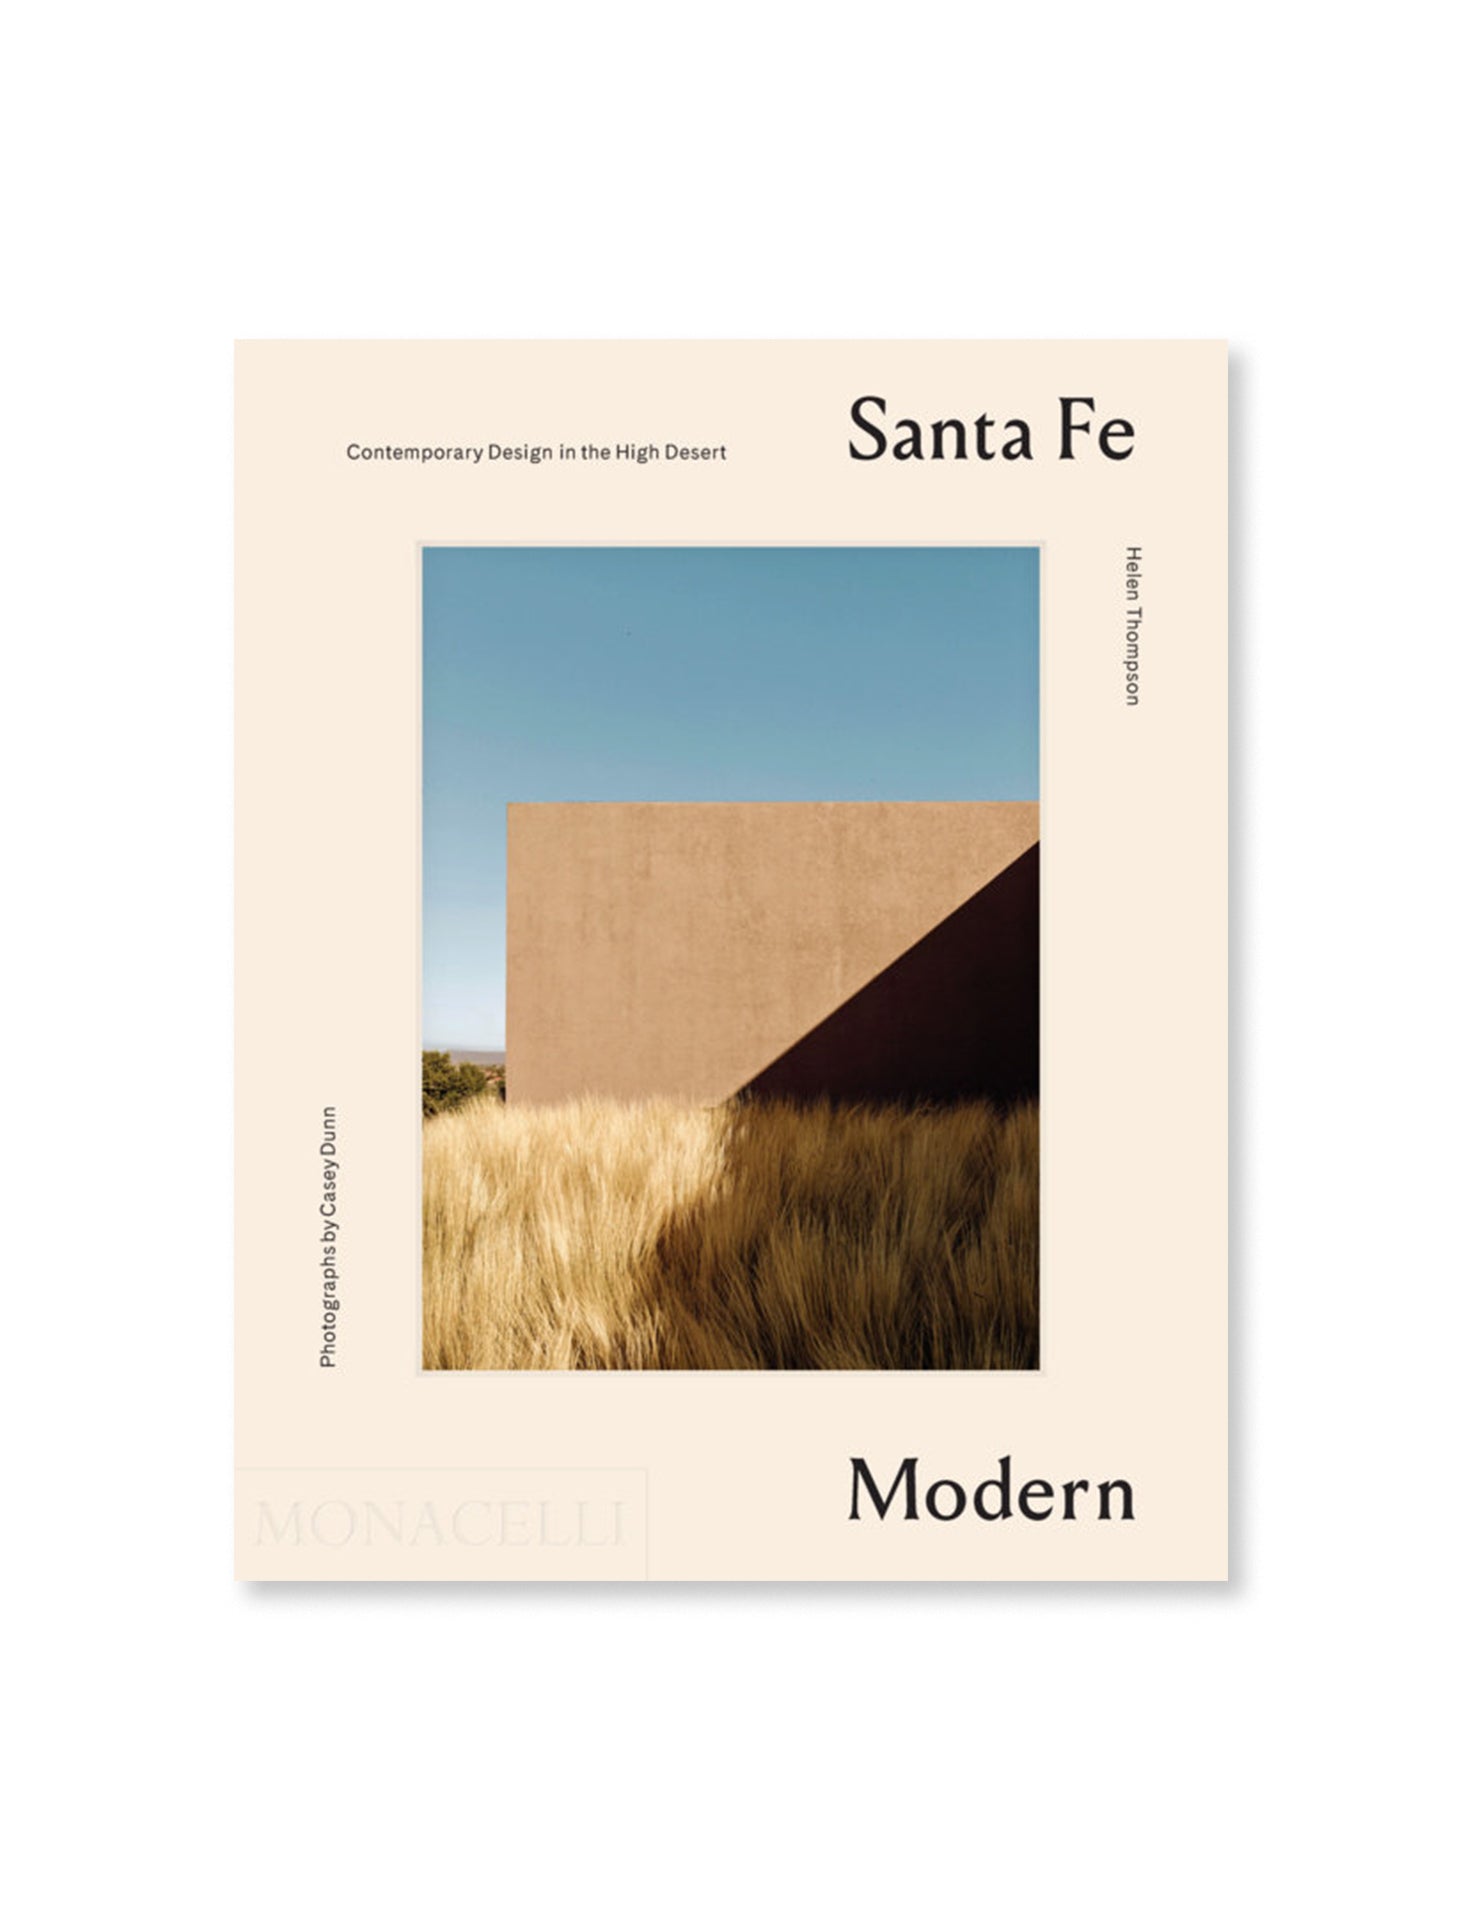 Santa Fe Modern Contemporary Design